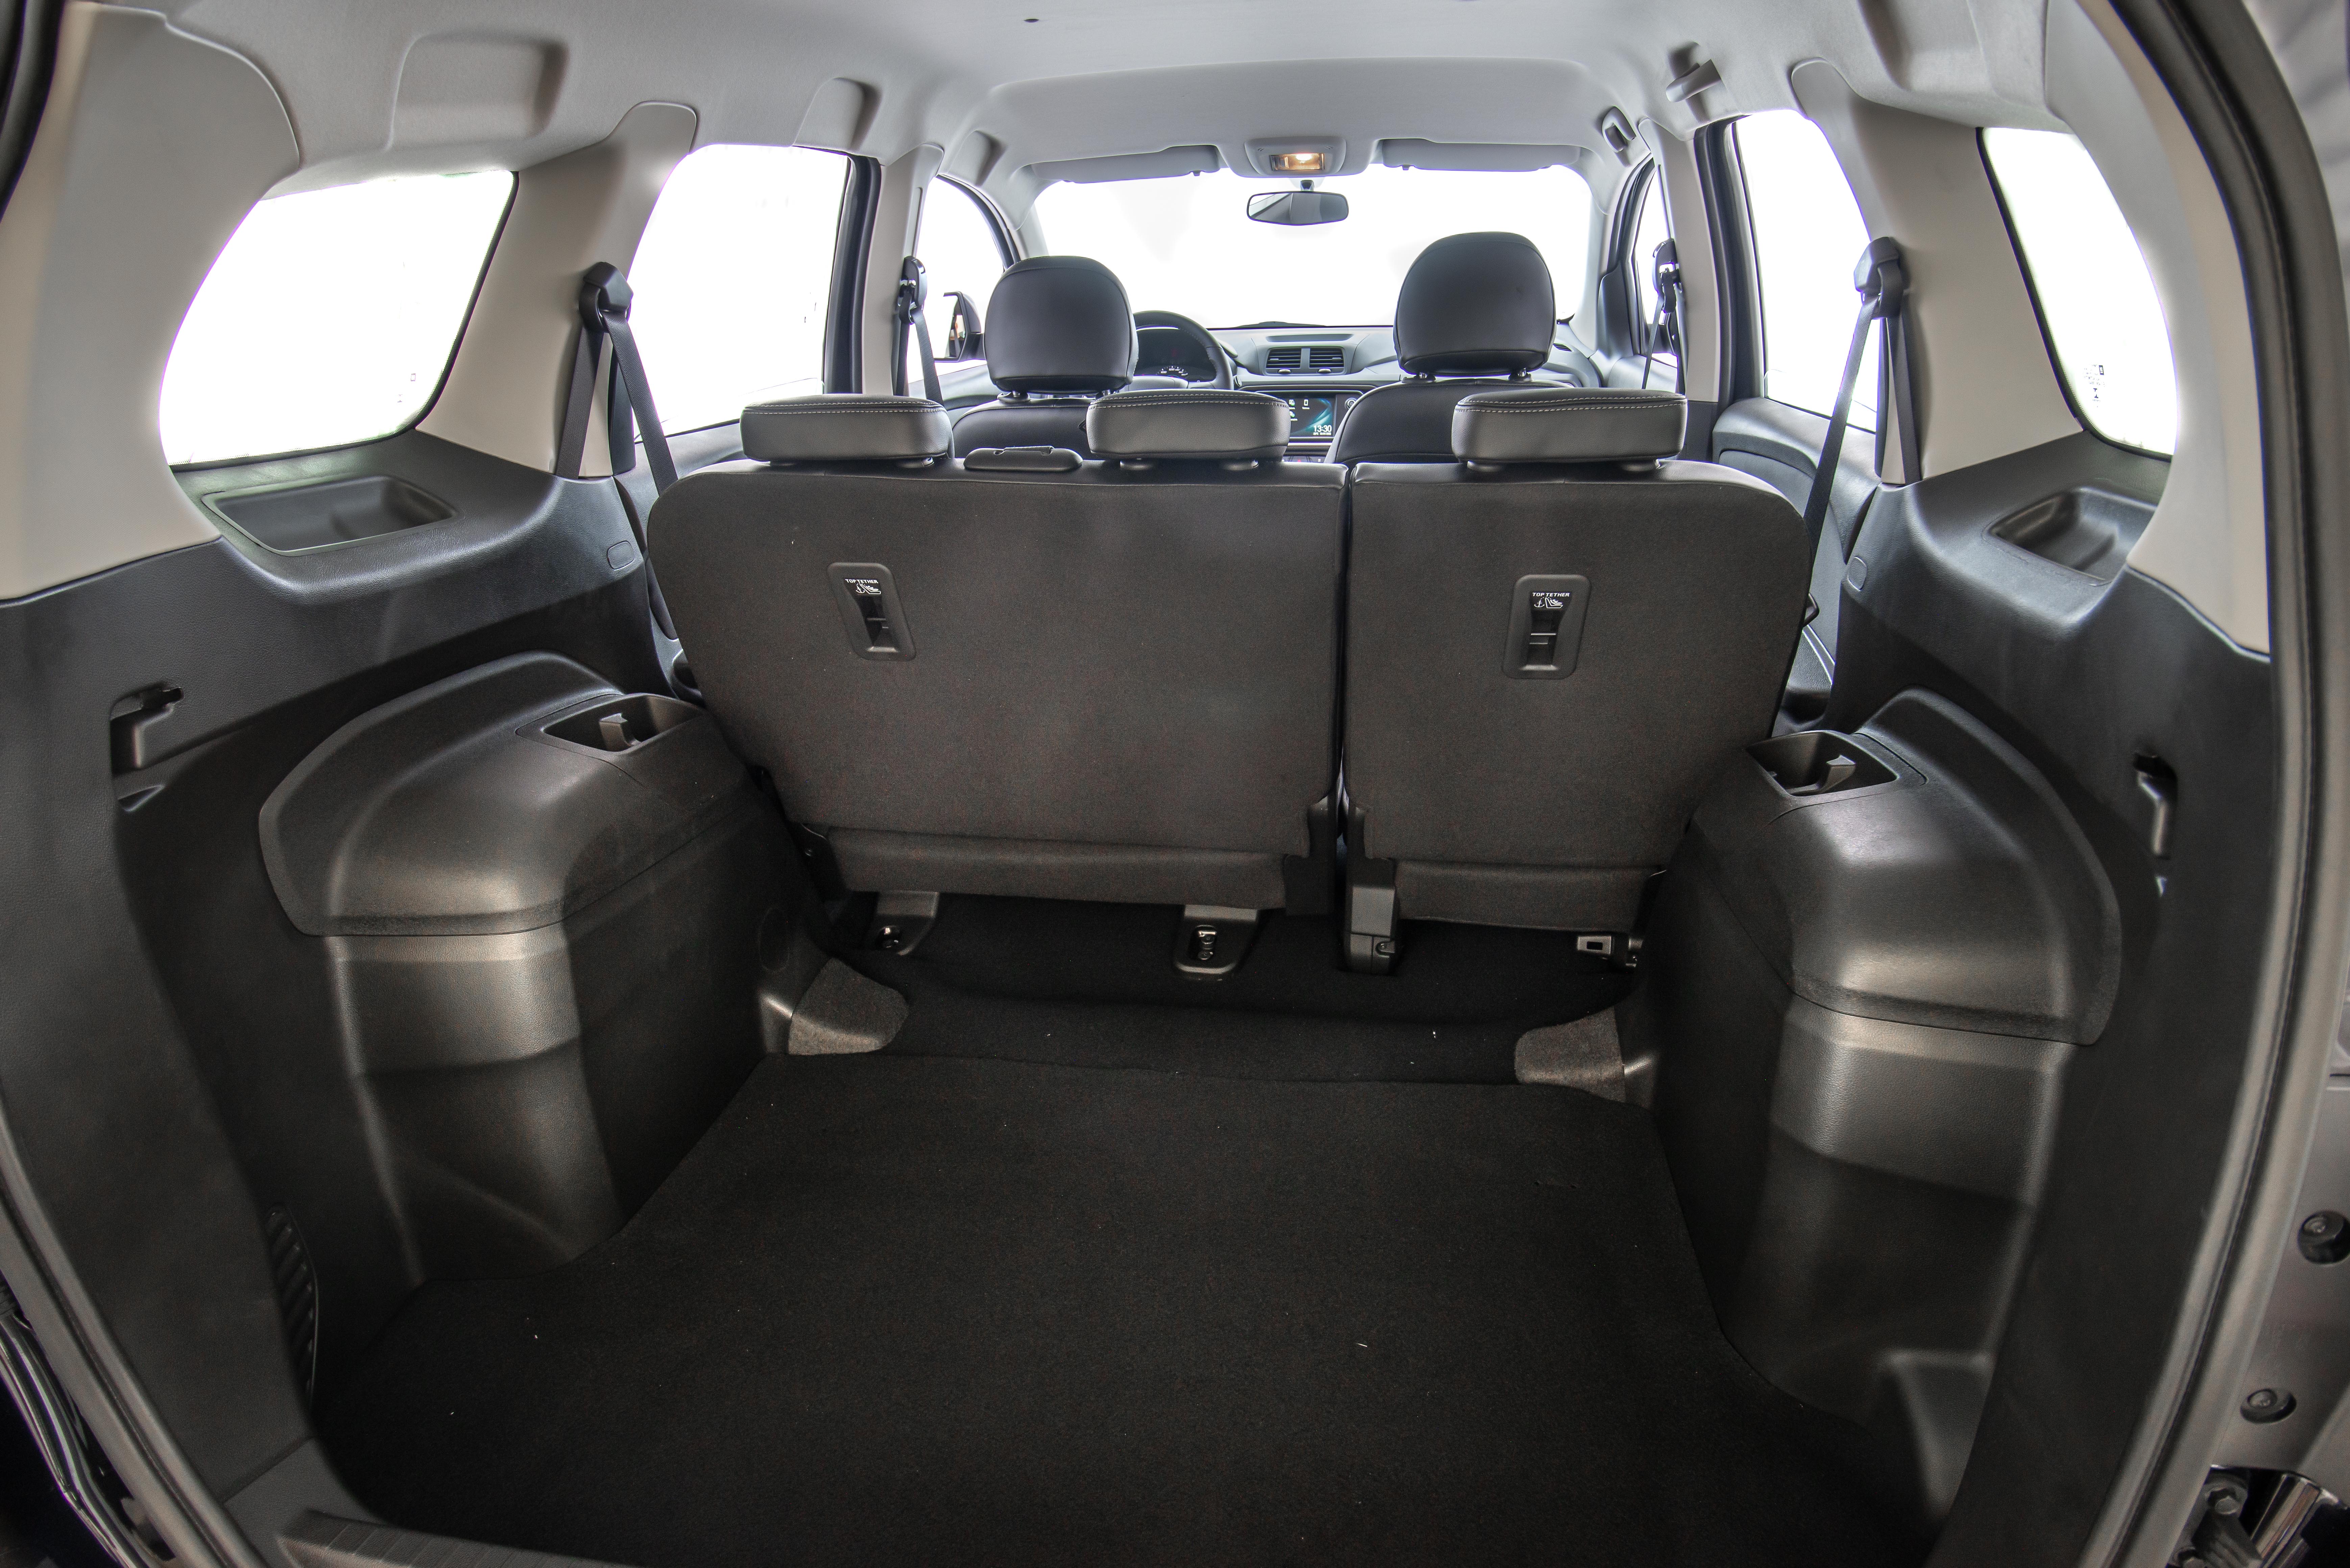 Com capacidade de até 710 litros, o porta-malas do Spin LTZ tem espaço para até uma cadeira de rodas montada